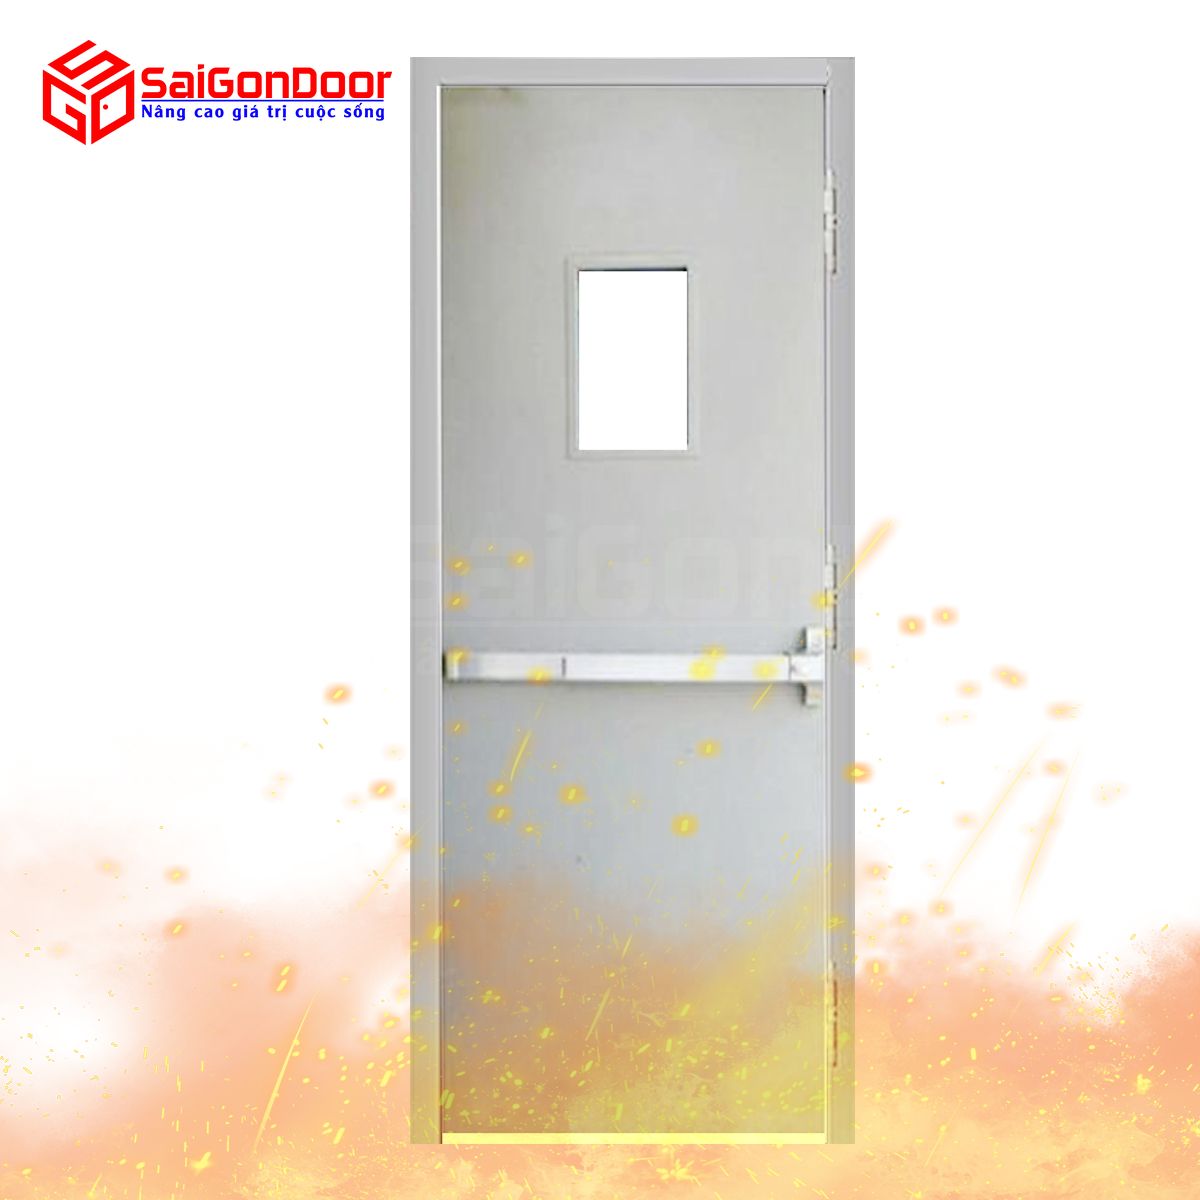 SaiGonDoor đơn vị cung cấp cửa chống cháy chất lượng và đáp ứng đủ tiêu chuẩn quy định về PCCC